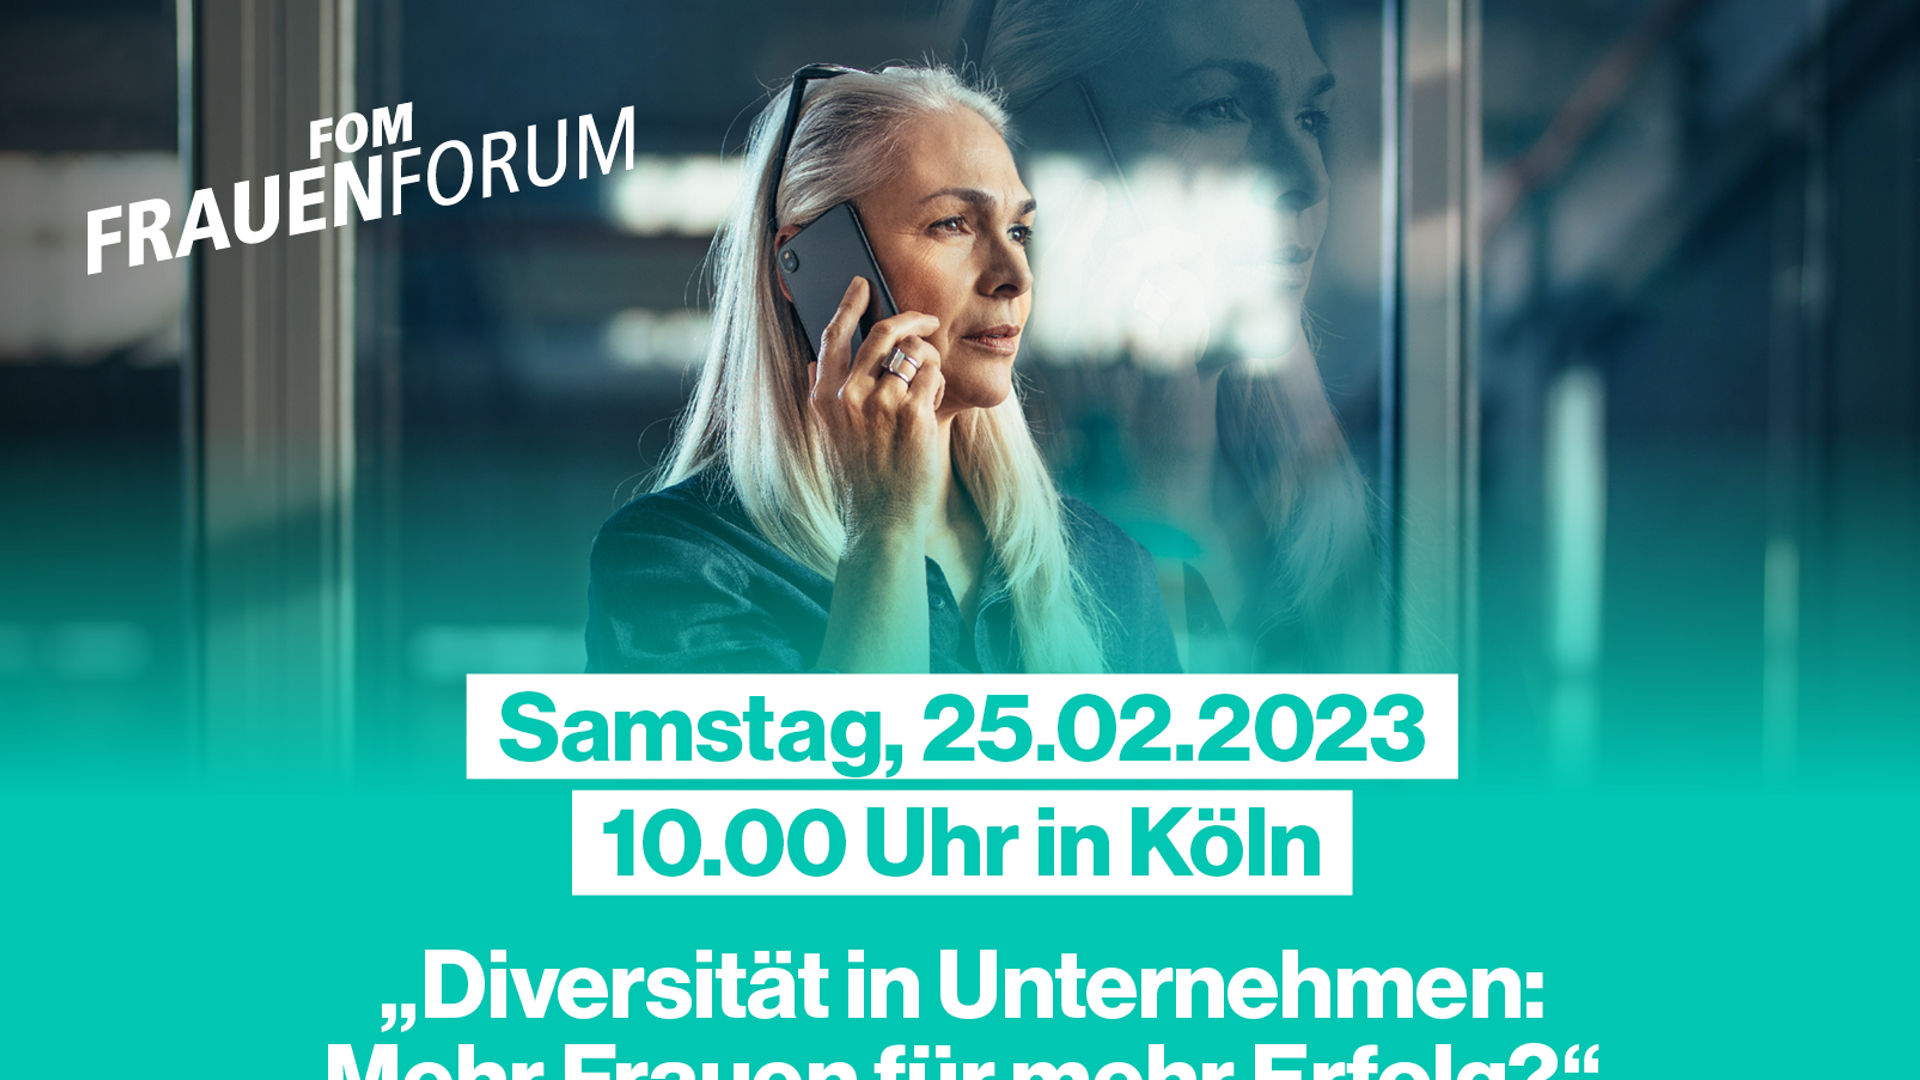 Beim diesjährigen FOM Frauen-Forum Köln haben Teilnehmende wieder die Möglichkeit zum Netzwerken.